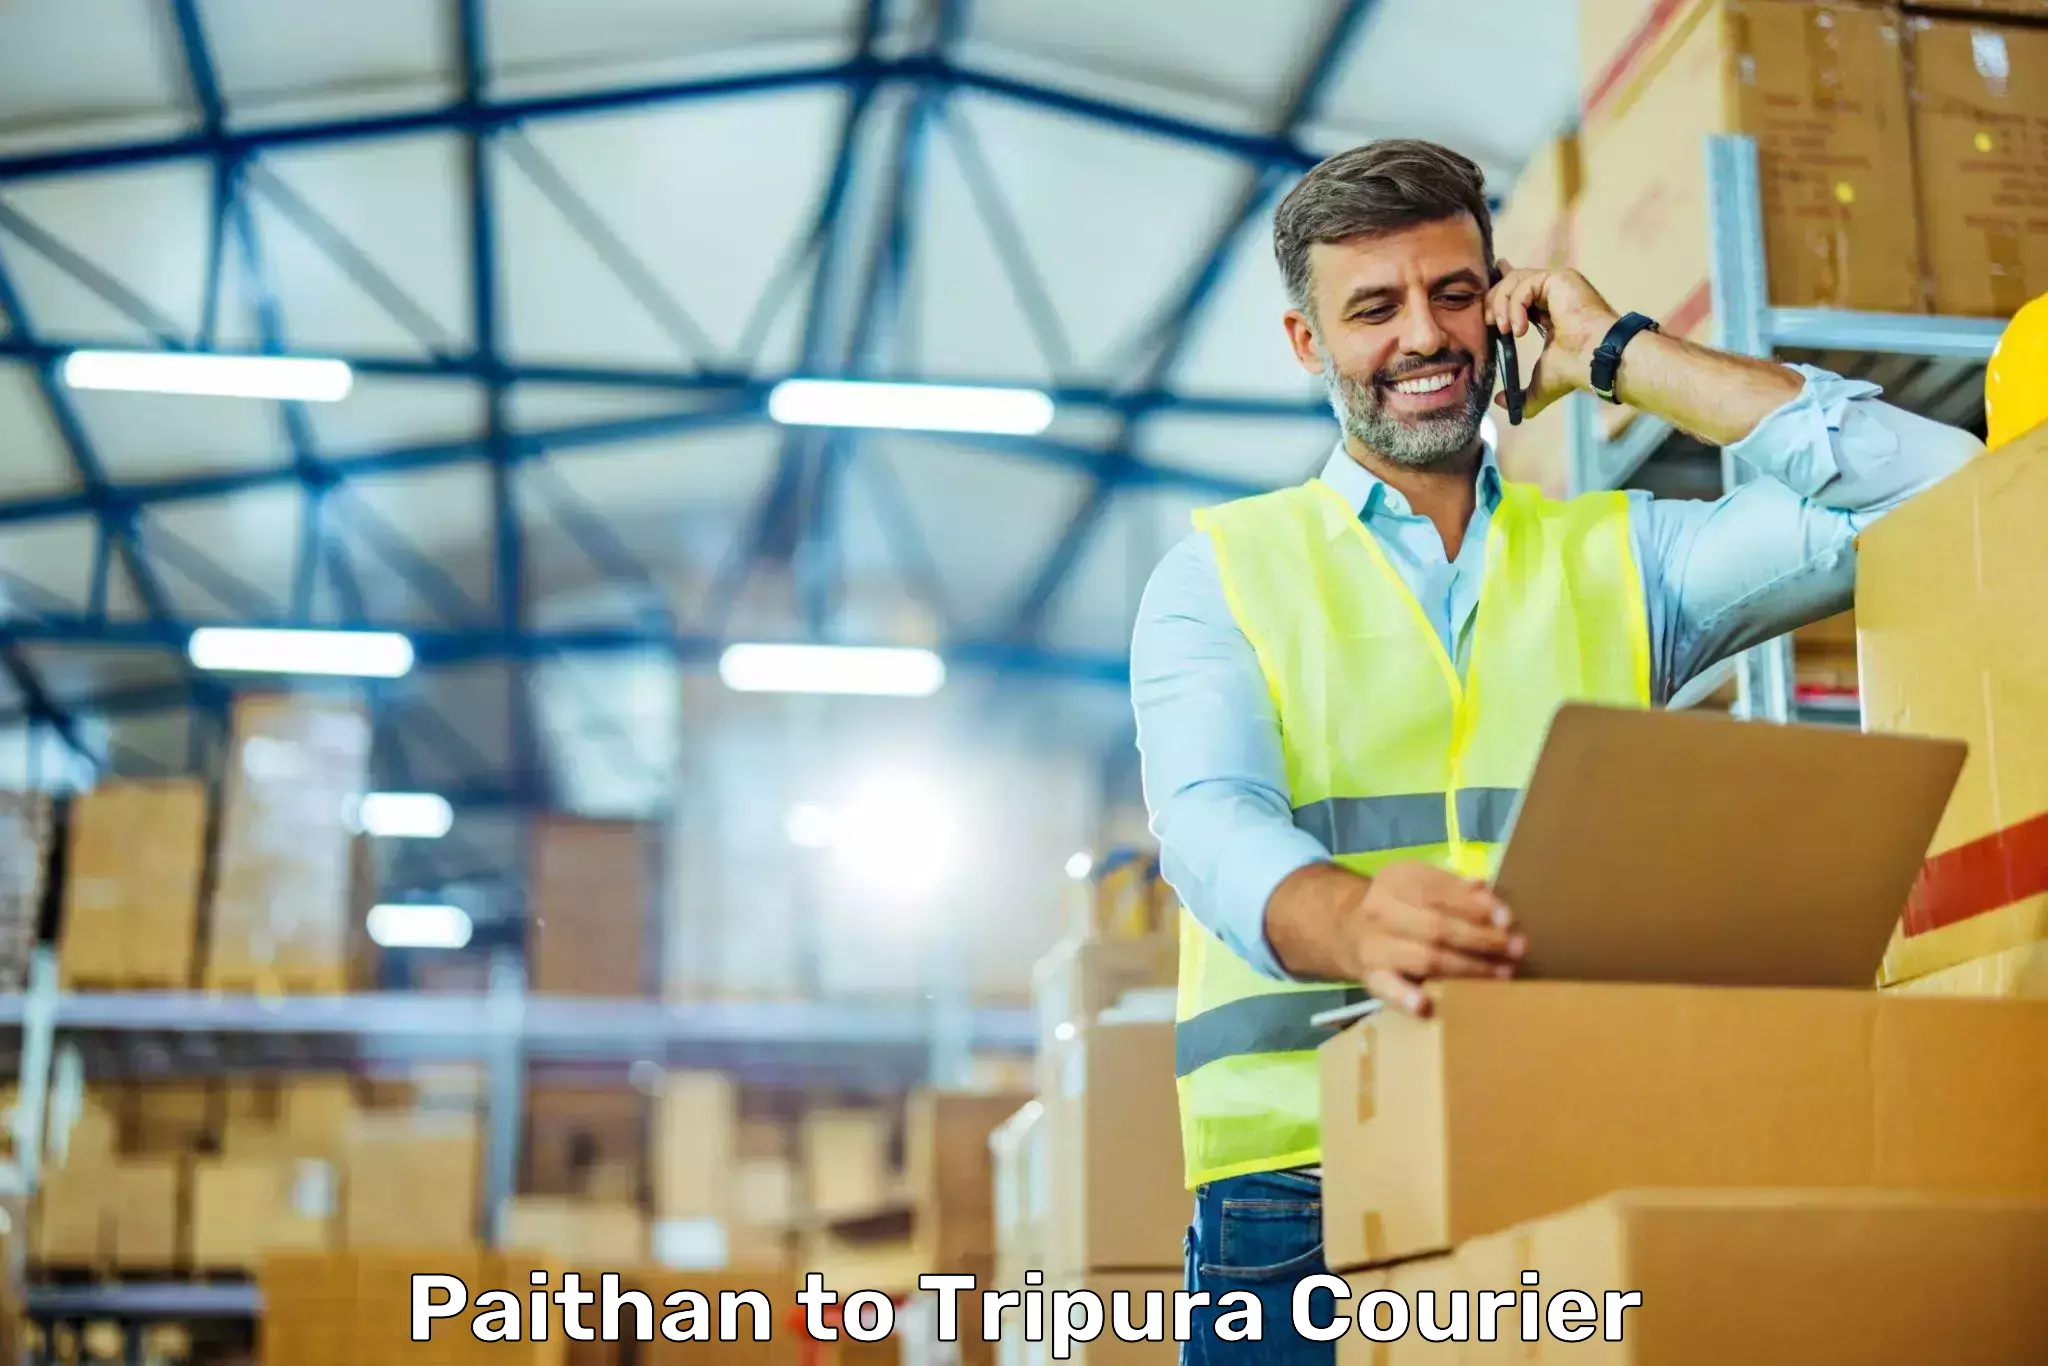 Urban courier service Paithan to Dharmanagar